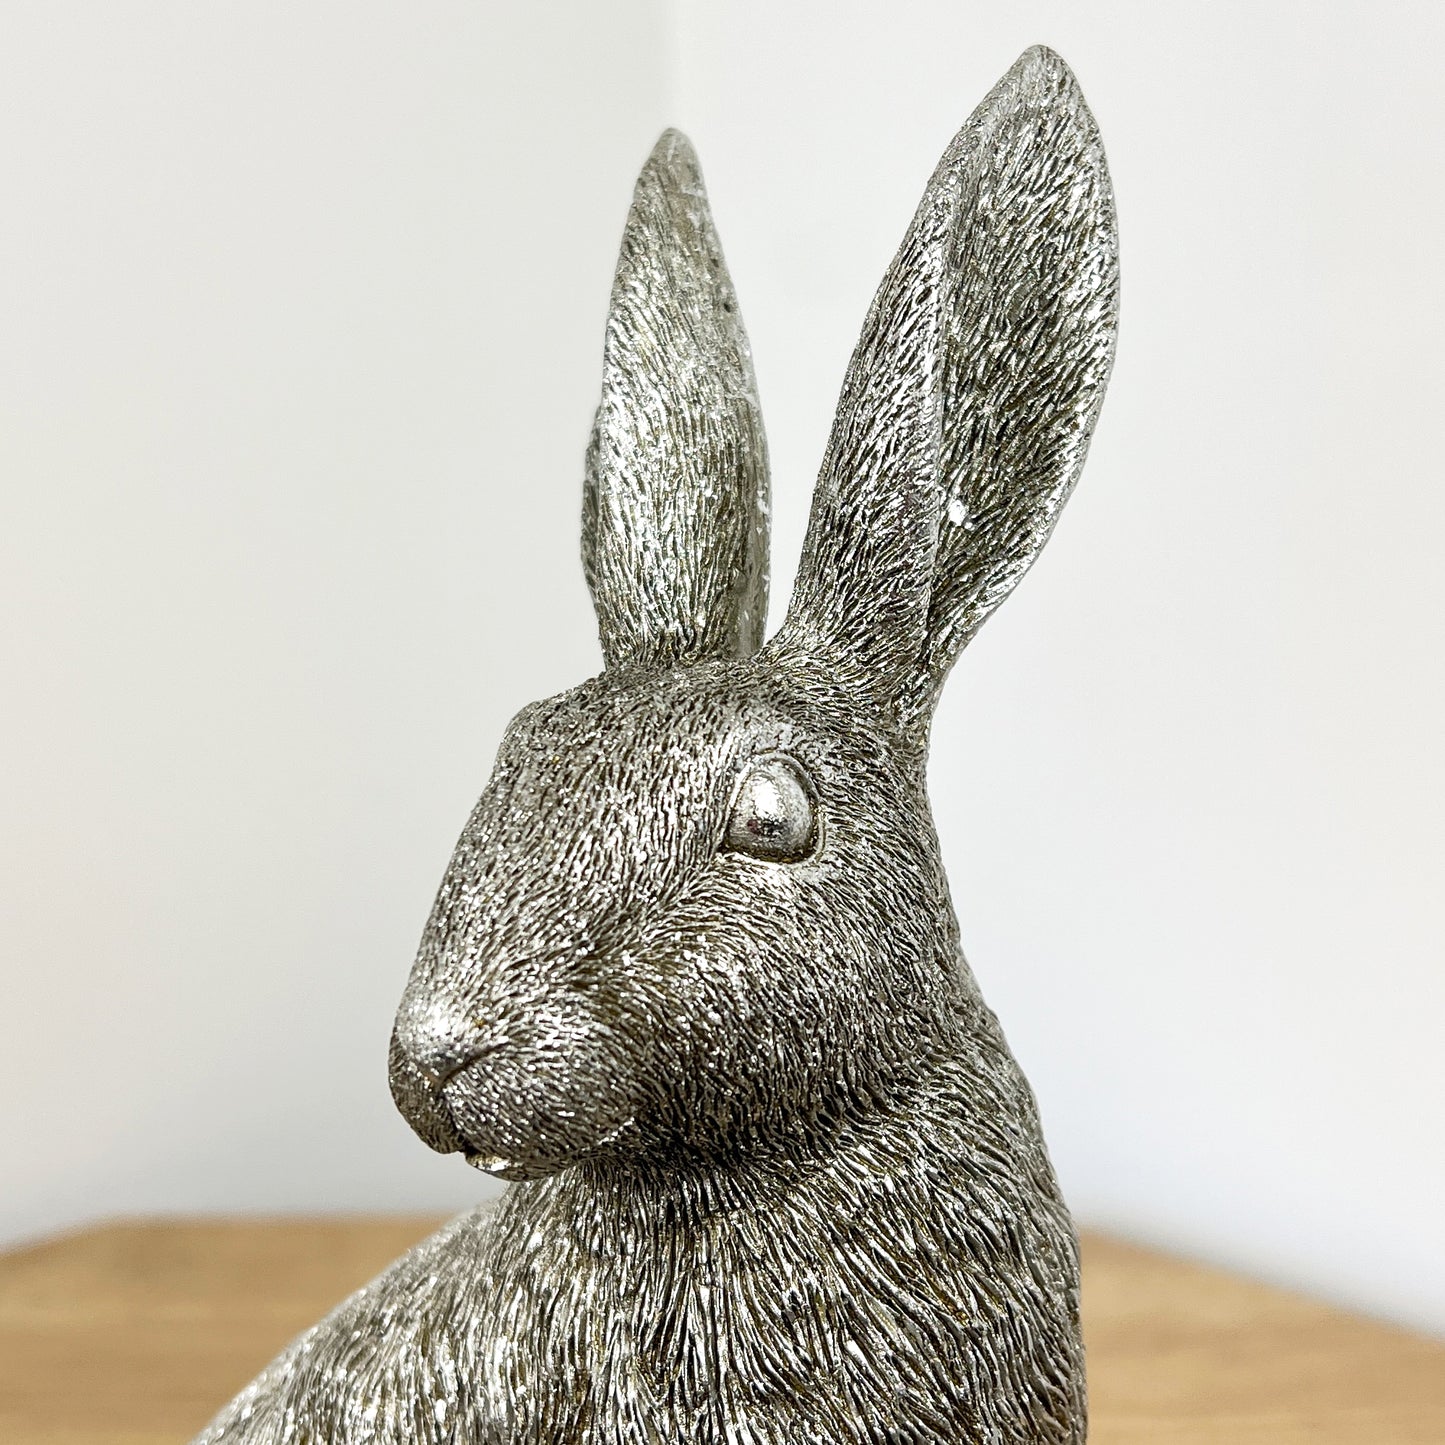 25cm Silver Hare Ornament - Resin